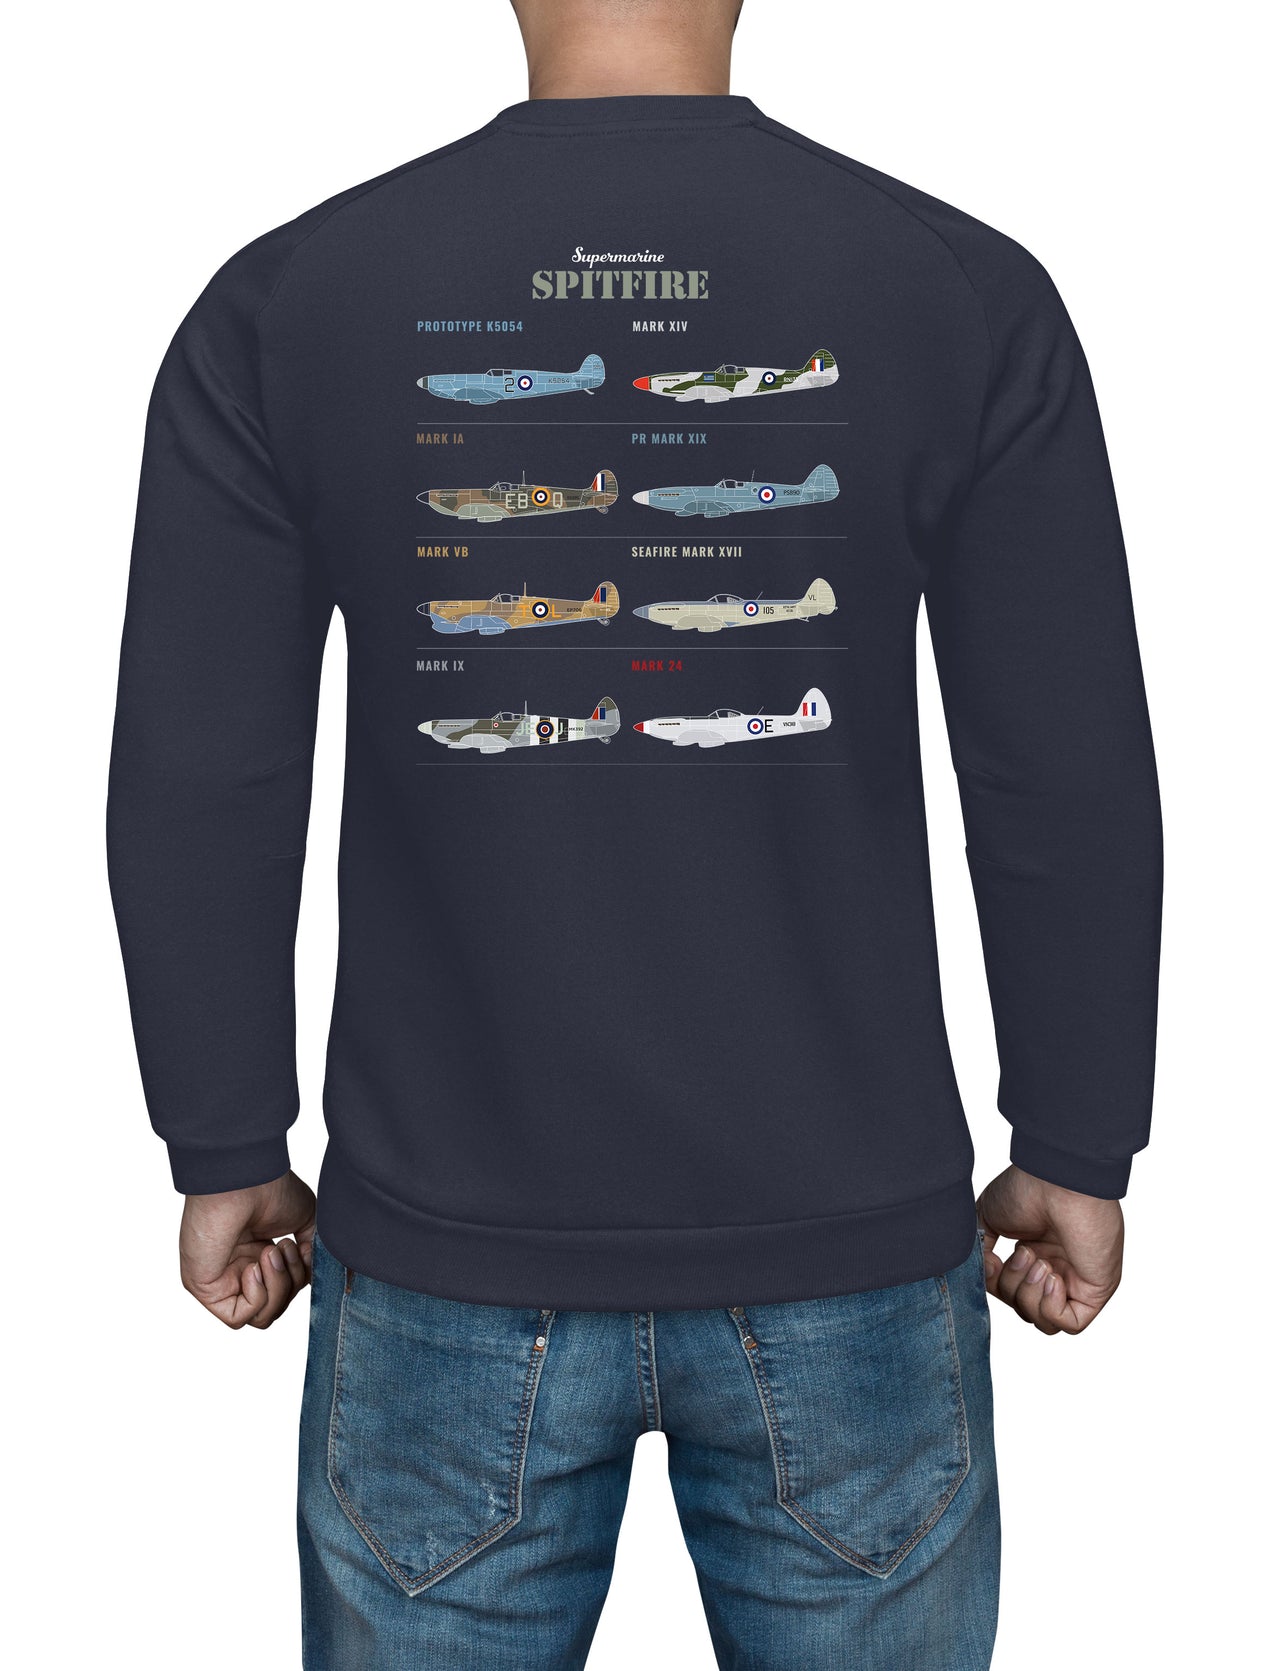 Spitfire MK IX - Sweat Shirt